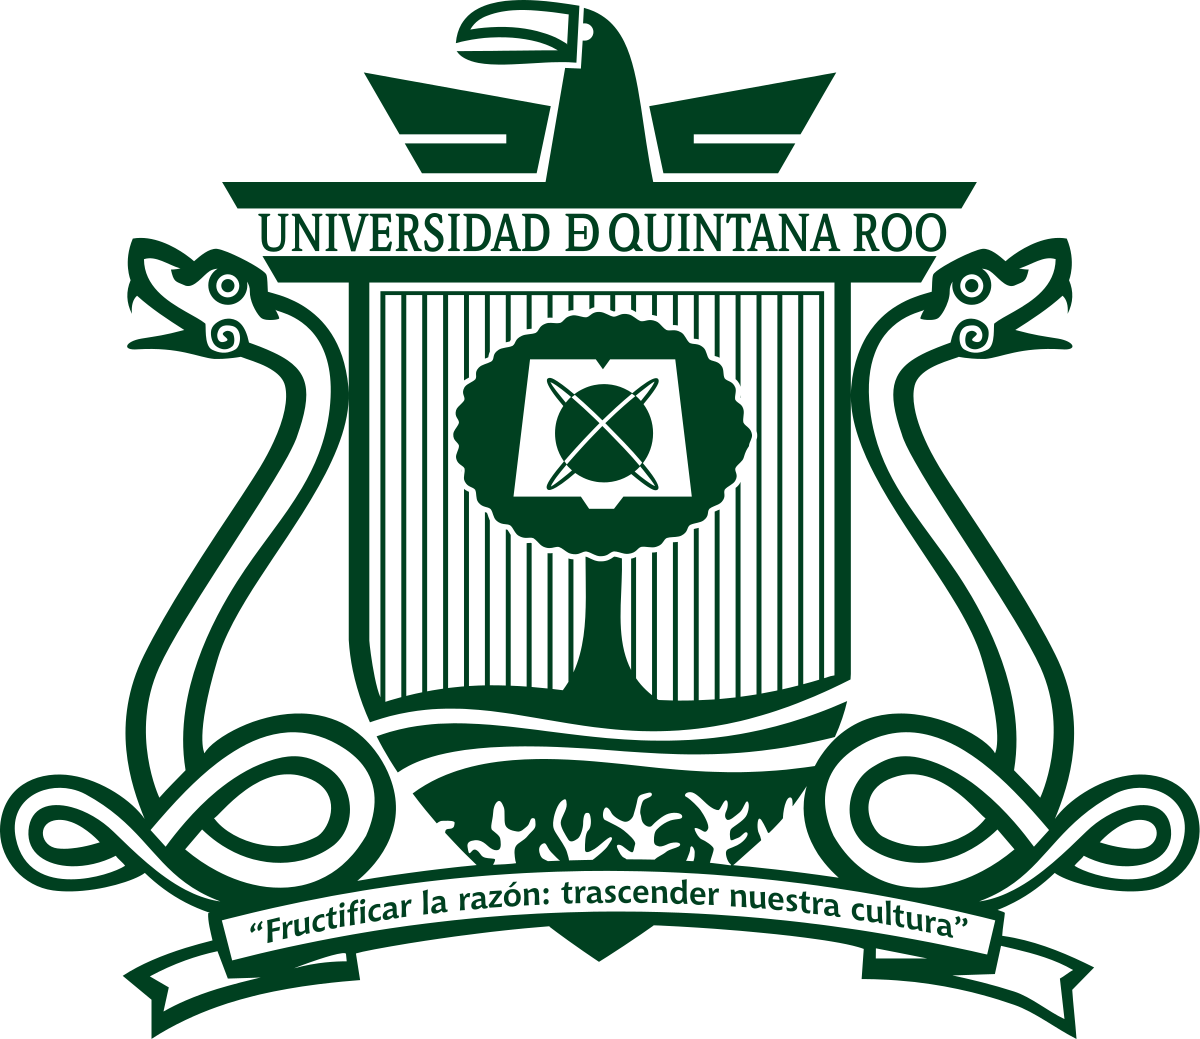 UQROO Universidad de Quintana Roo Logo PNG vector in SVG, PDF, AI, CDR  format